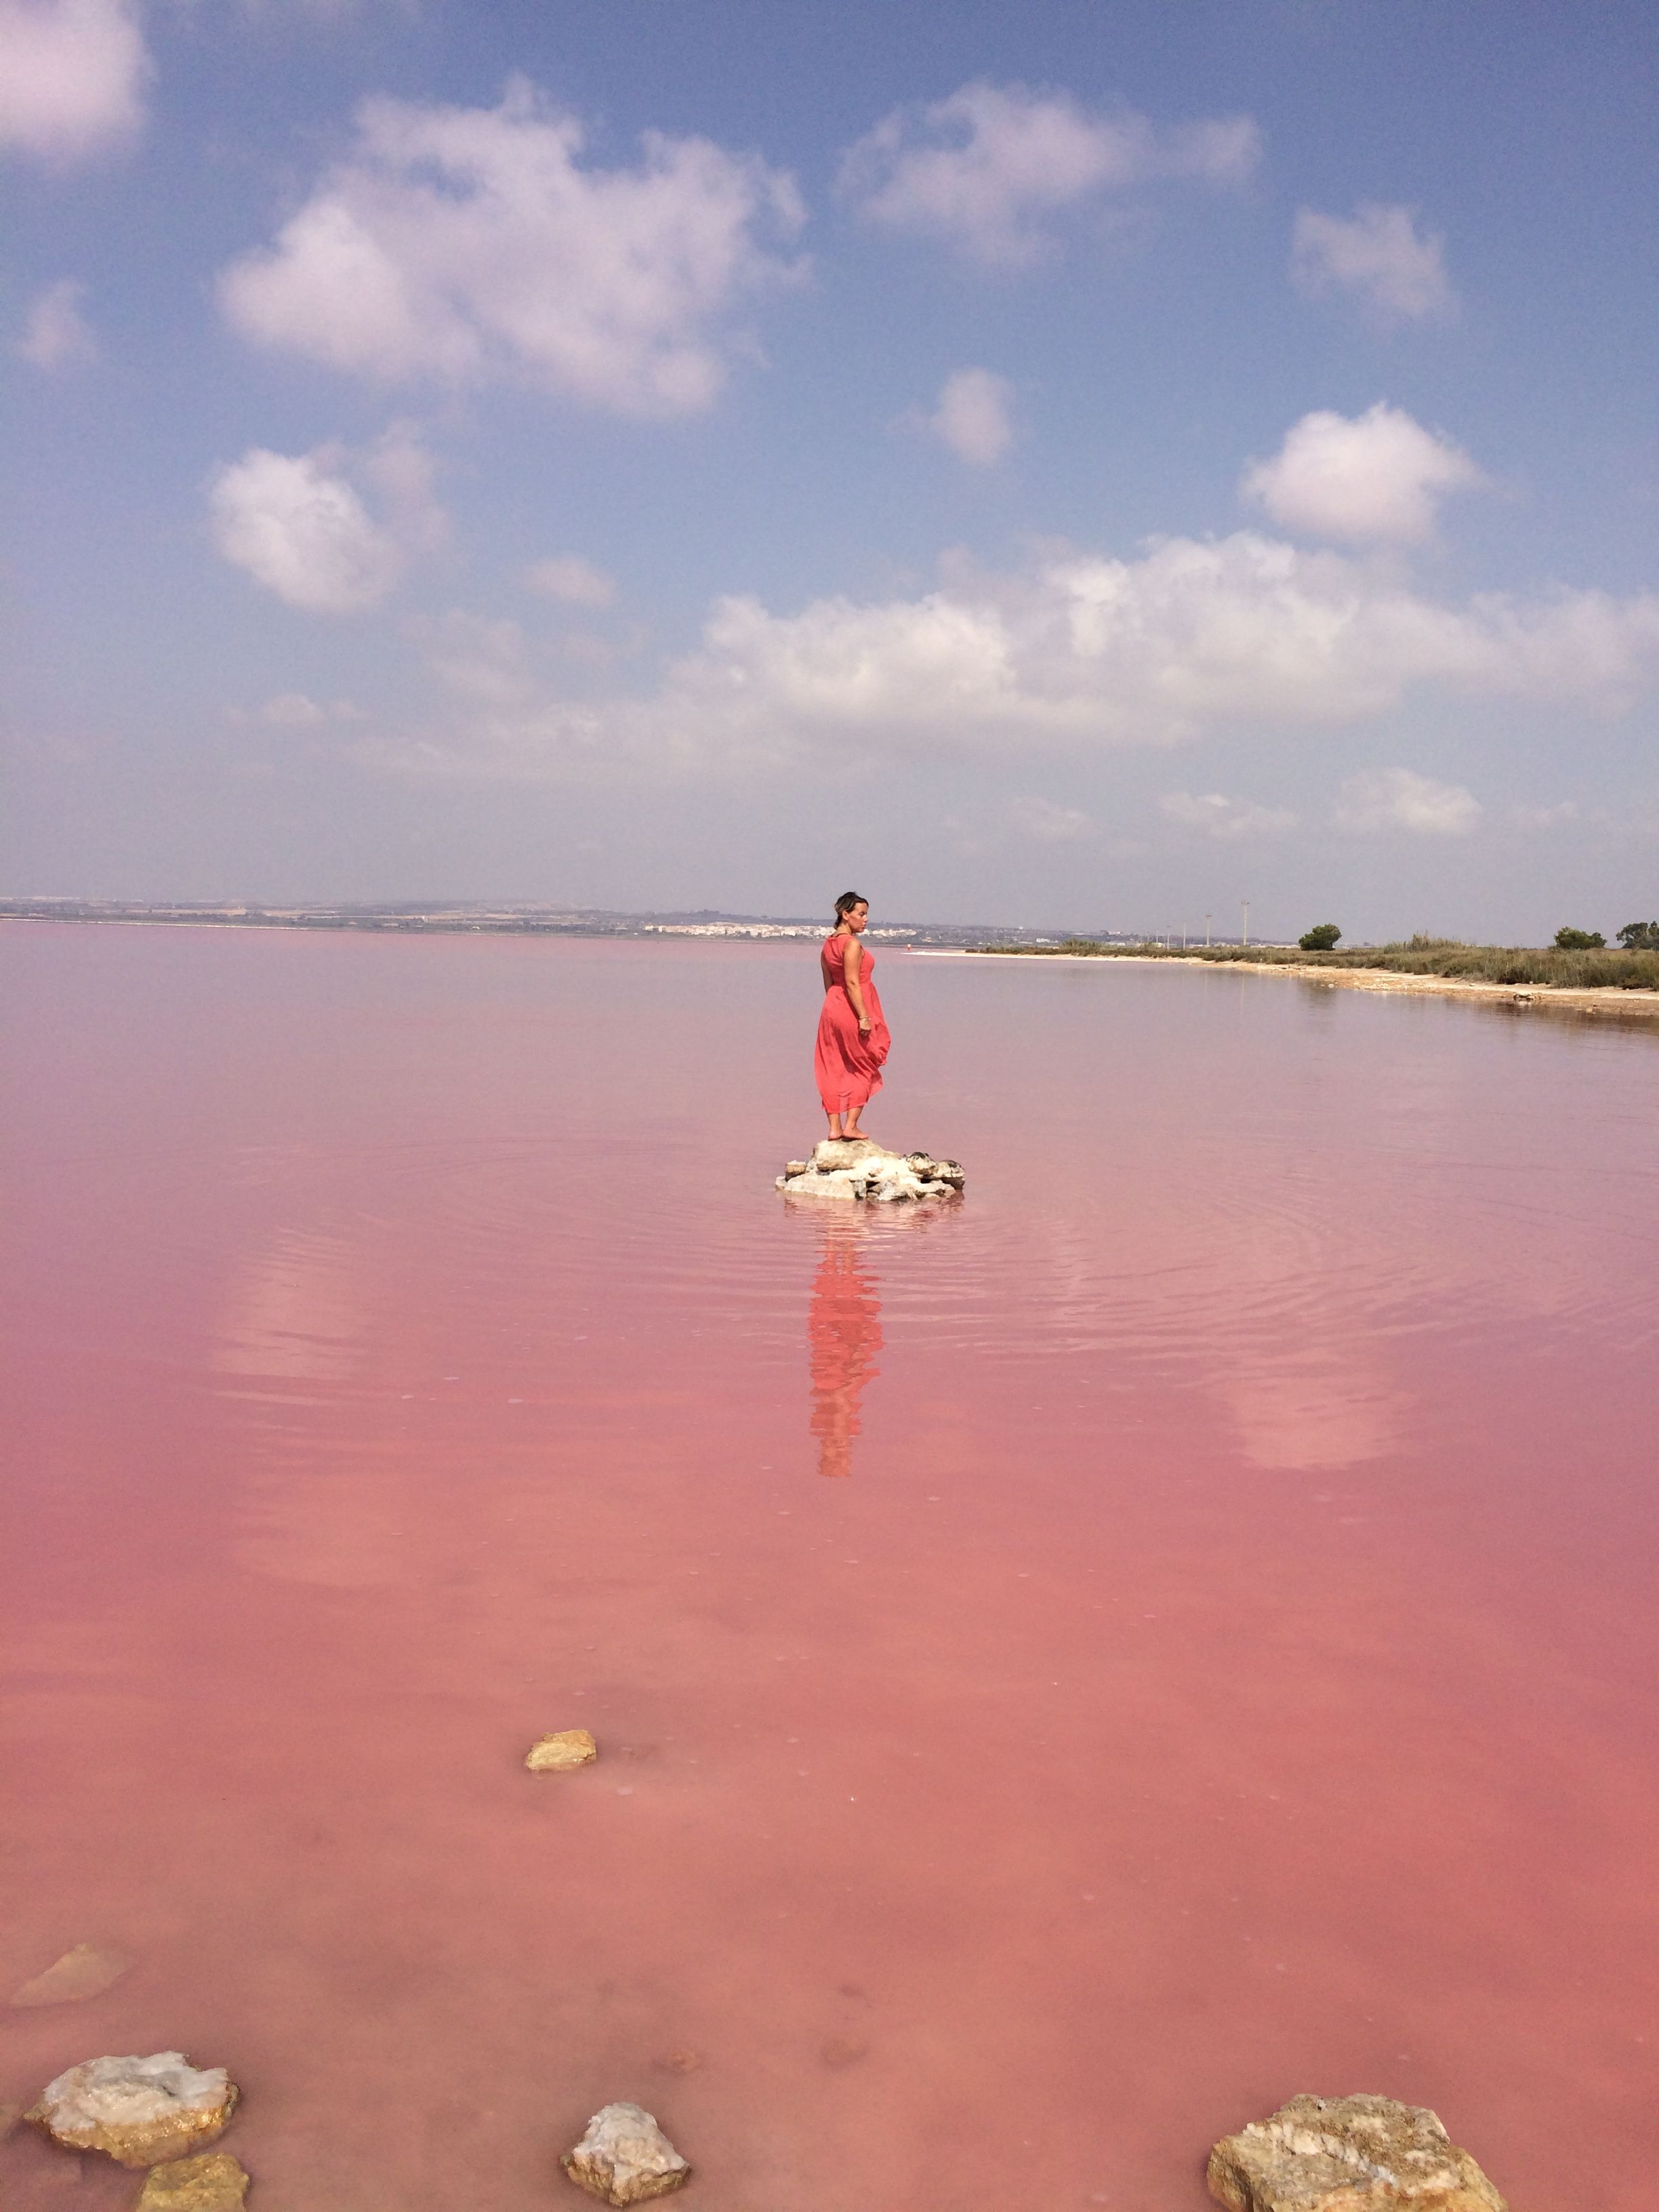 розовое озеро в алтае